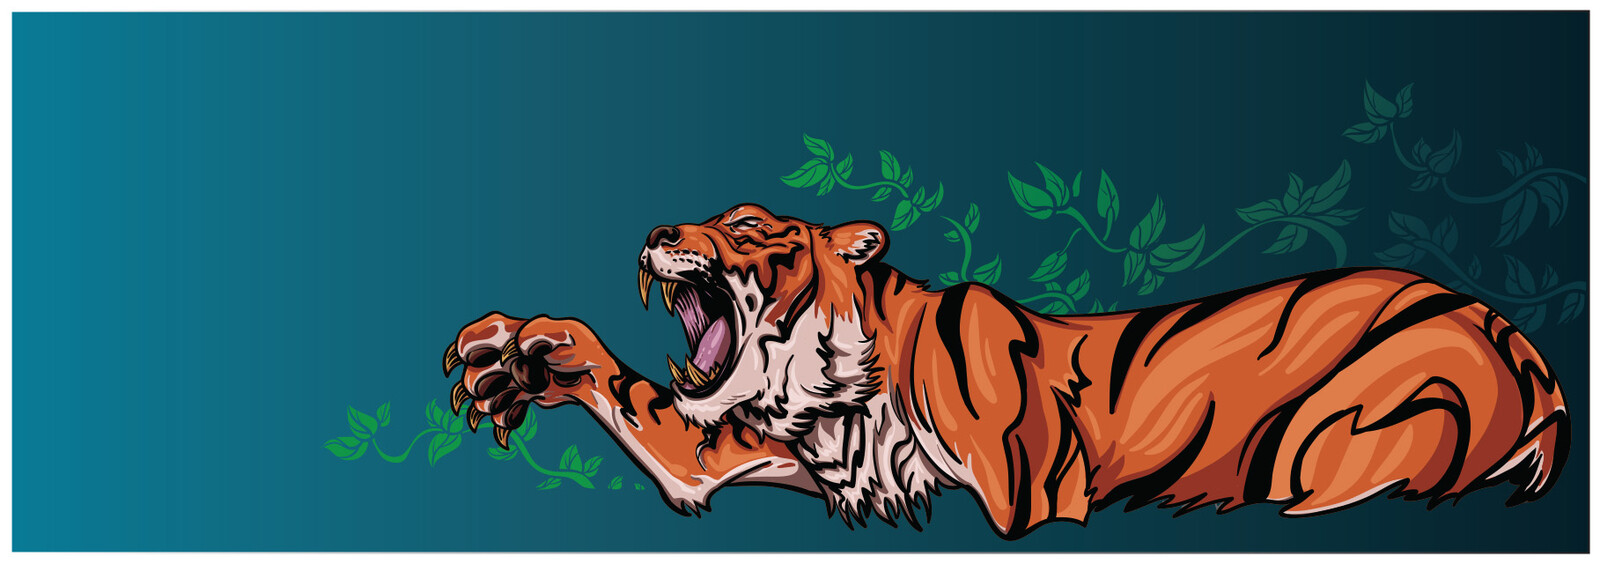 Tiger vector illustration.